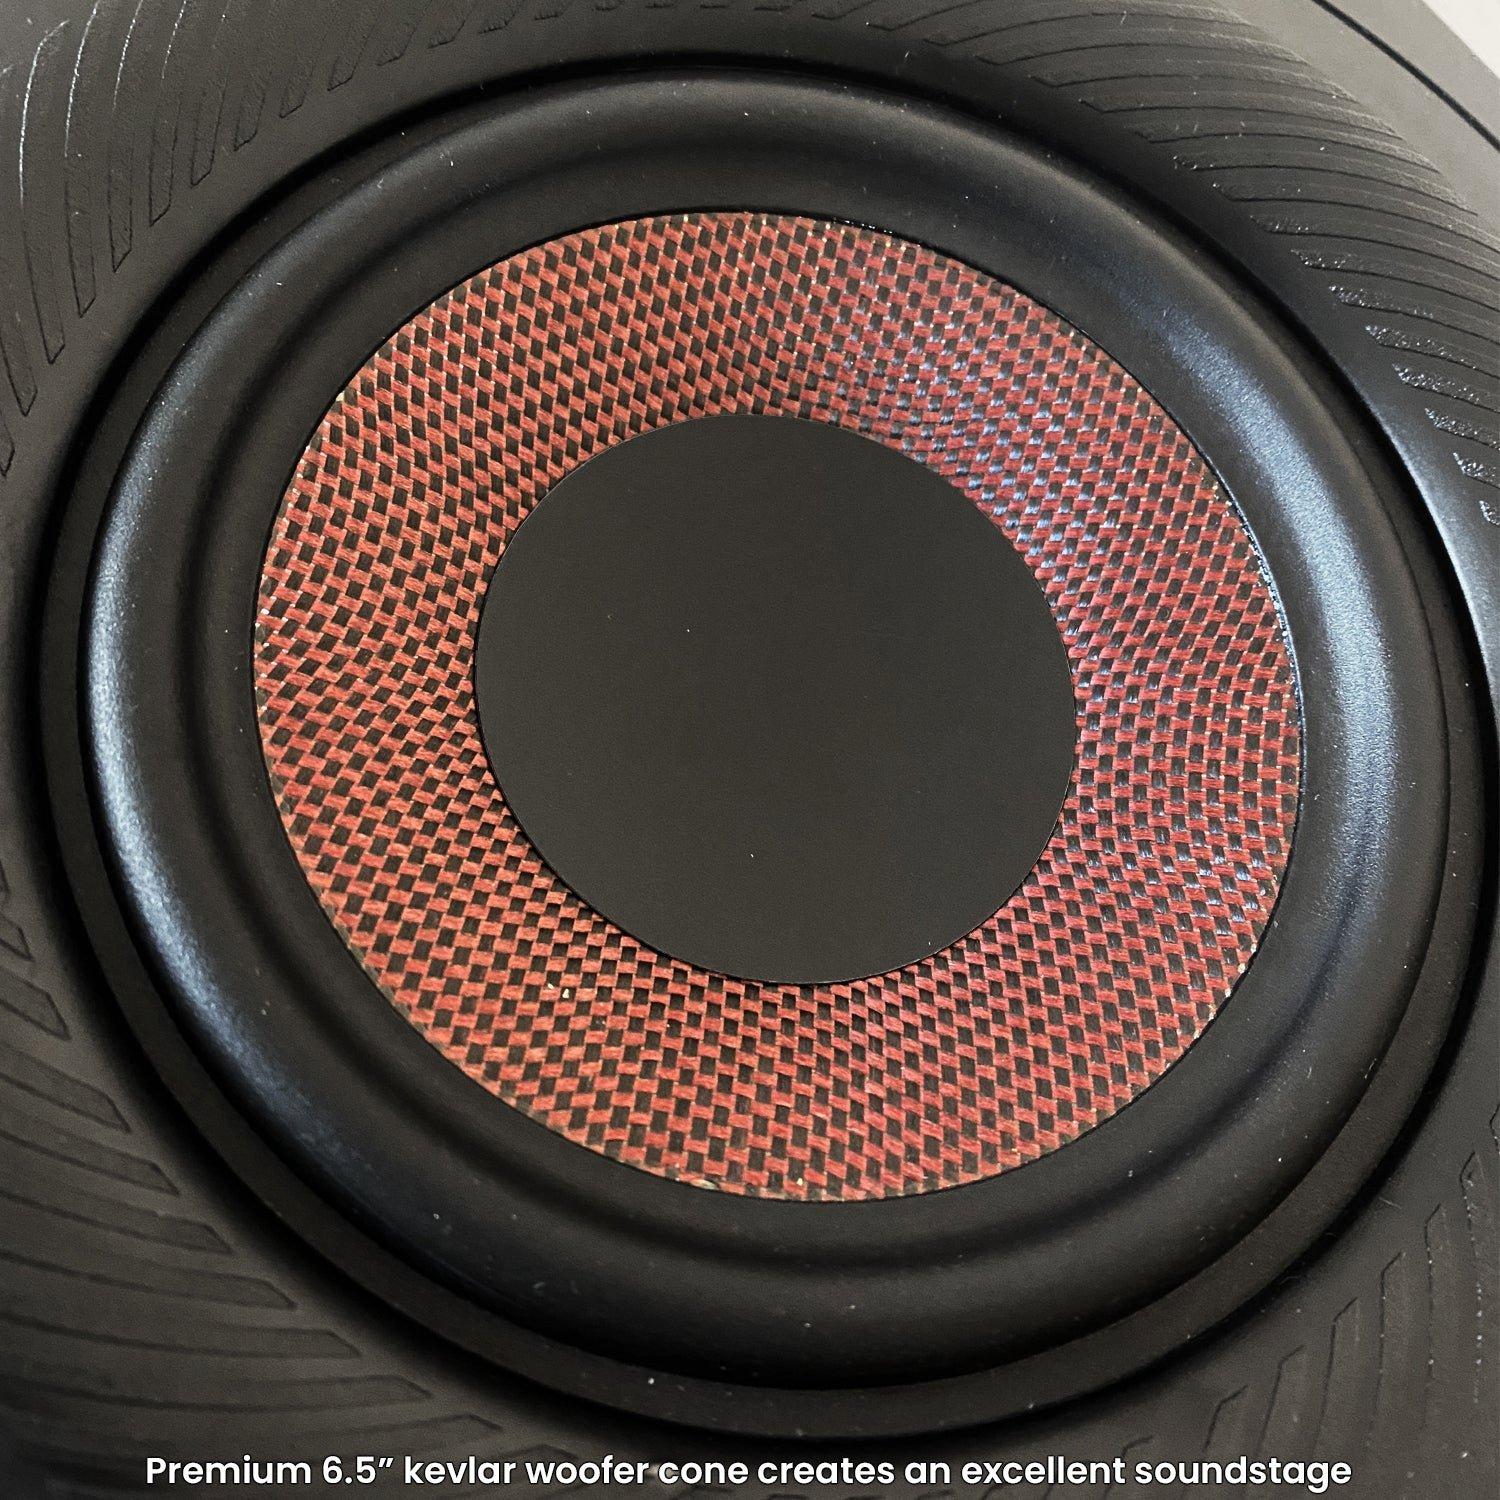 2x Pair LOOPS 140W 6.5aEUR Low Profile In-Wall Speaker - 8Ohm - Ultra Slim Recessed